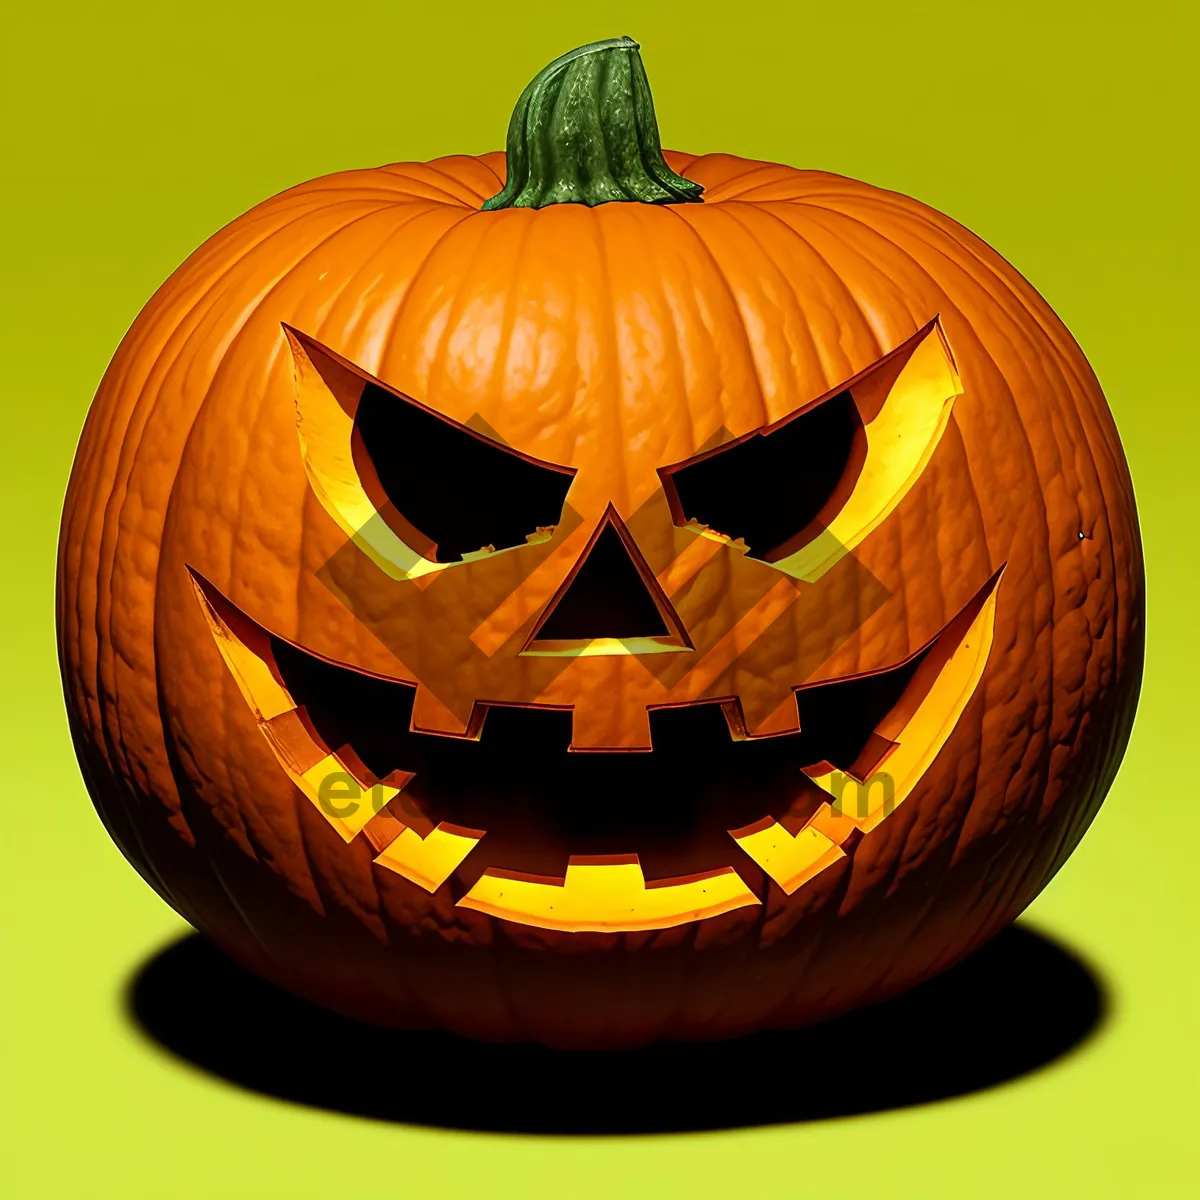 Picture of Spooky Jack-O'-Lantern Illuminates Halloween Night